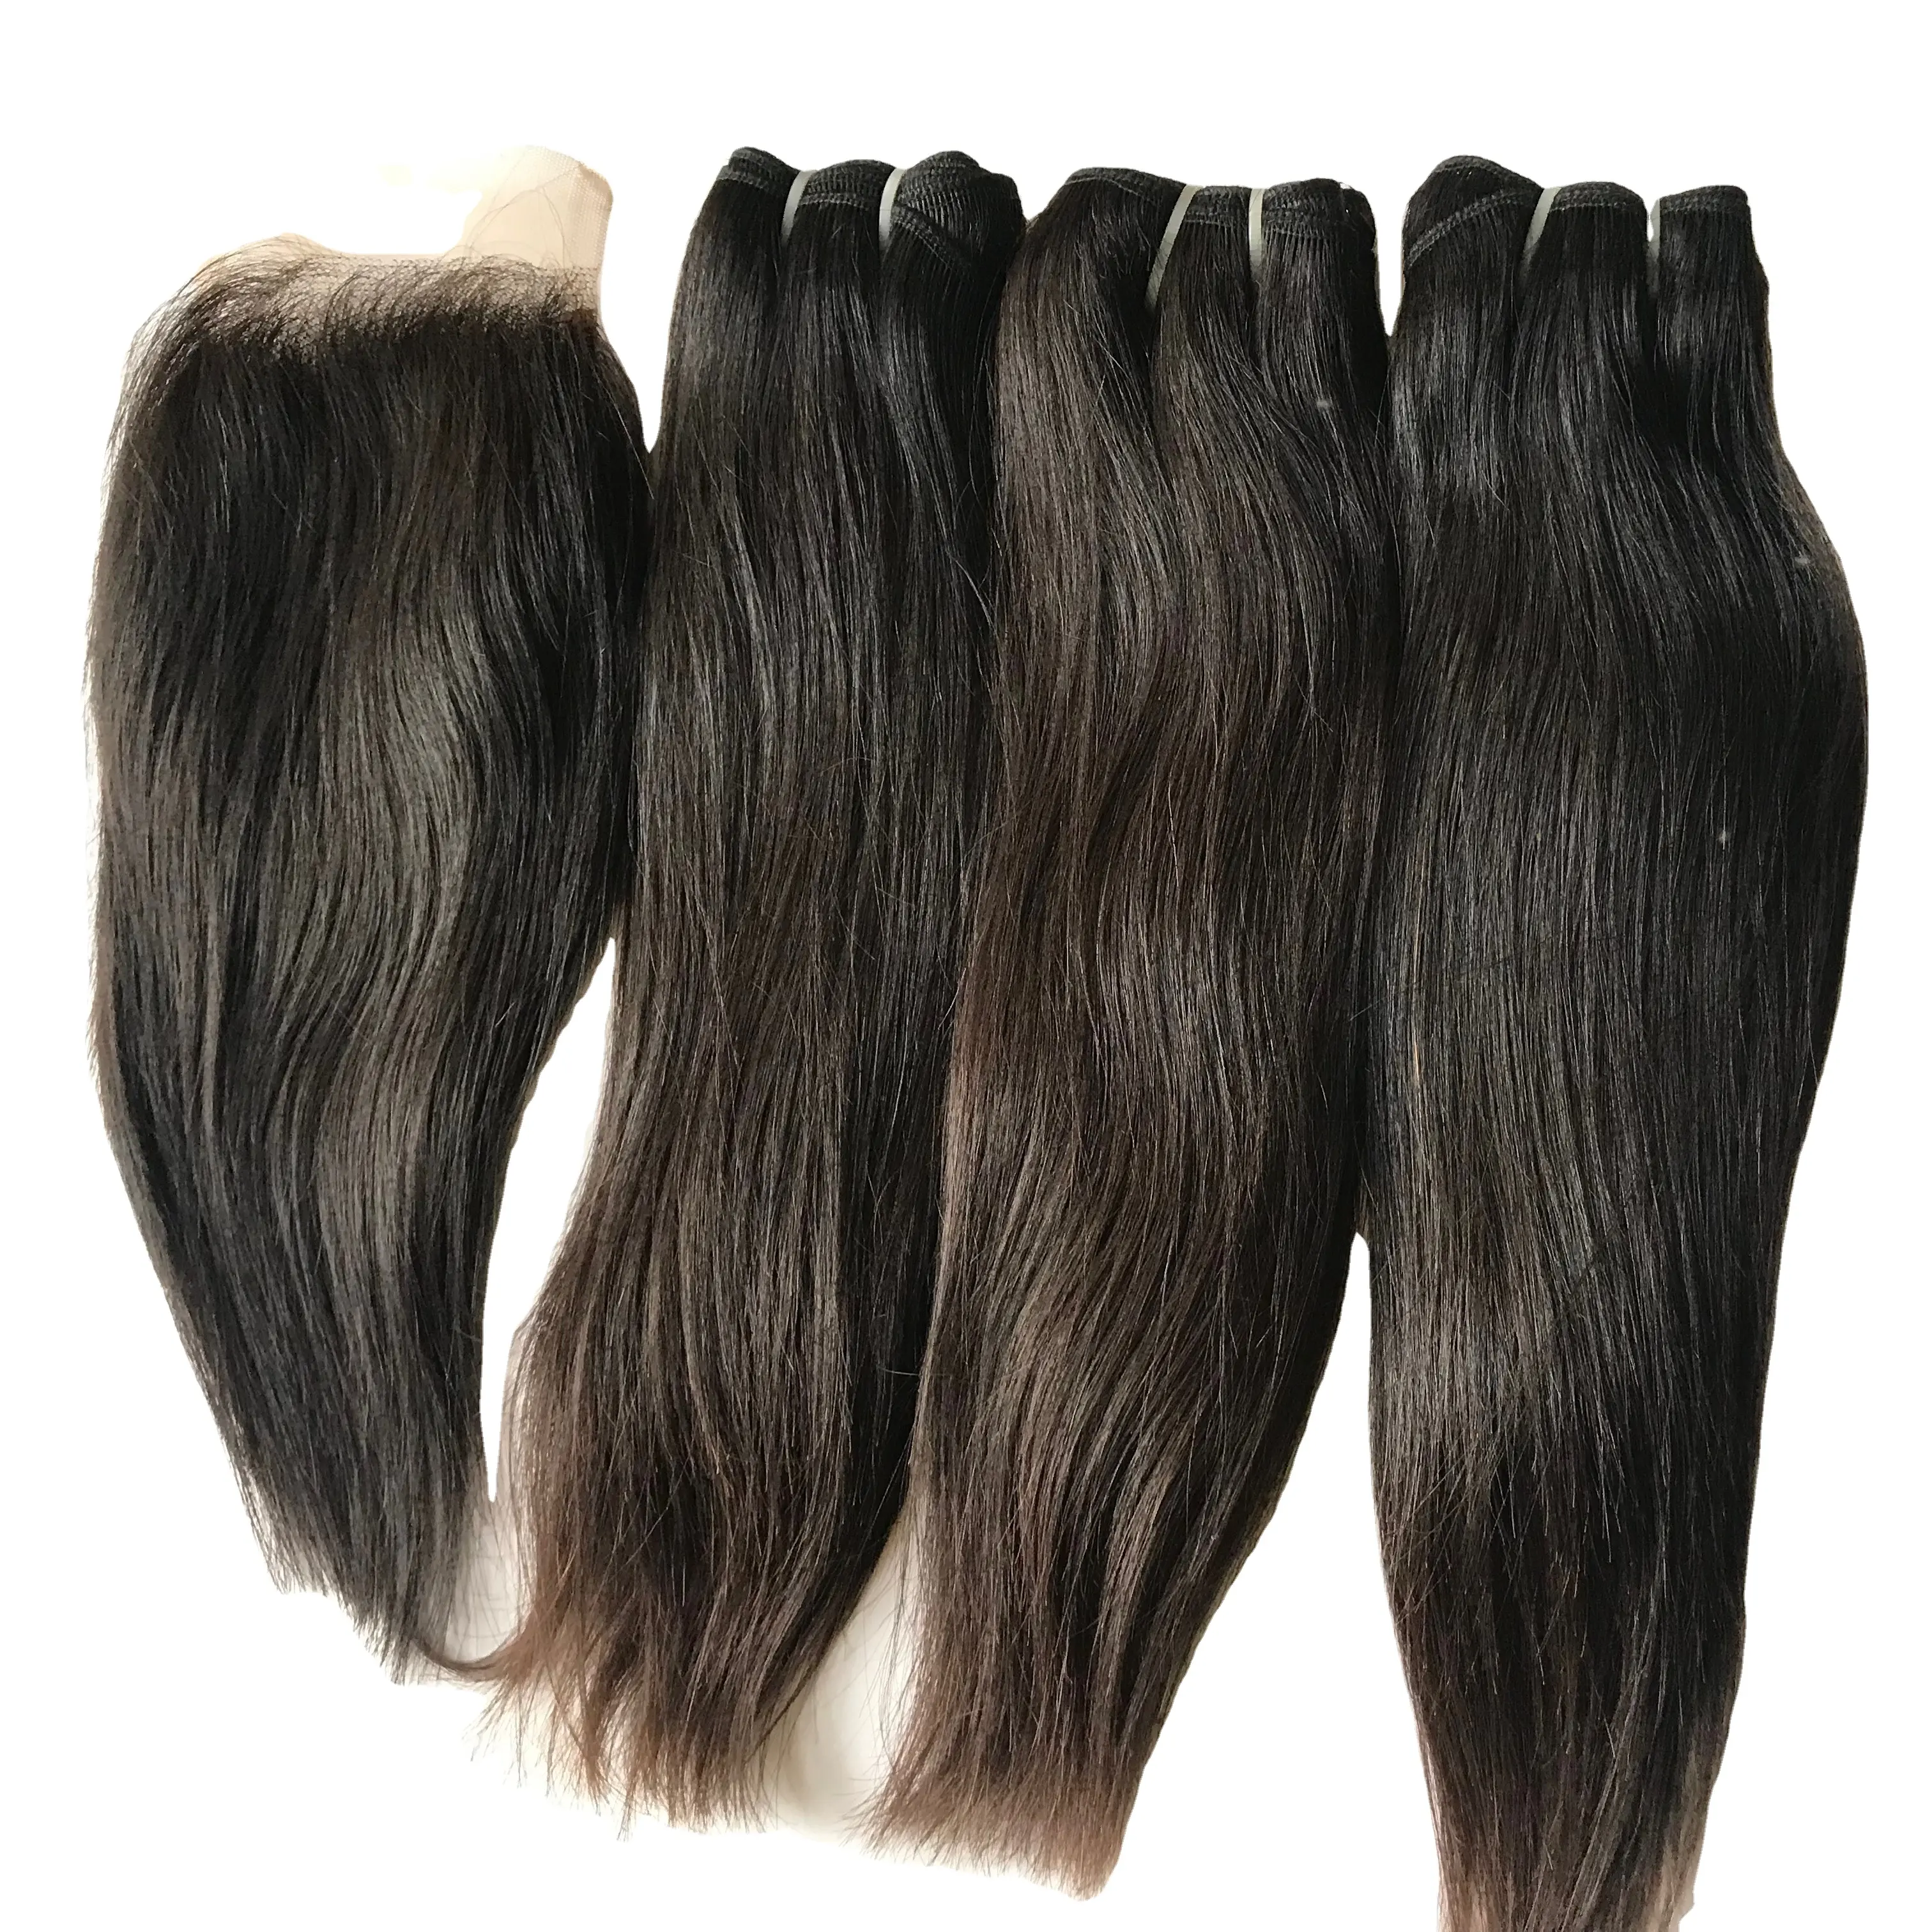 Eading-extensiones de pelo indio virgen Remy, cabello humano sin procesar liso con cutícula alineada